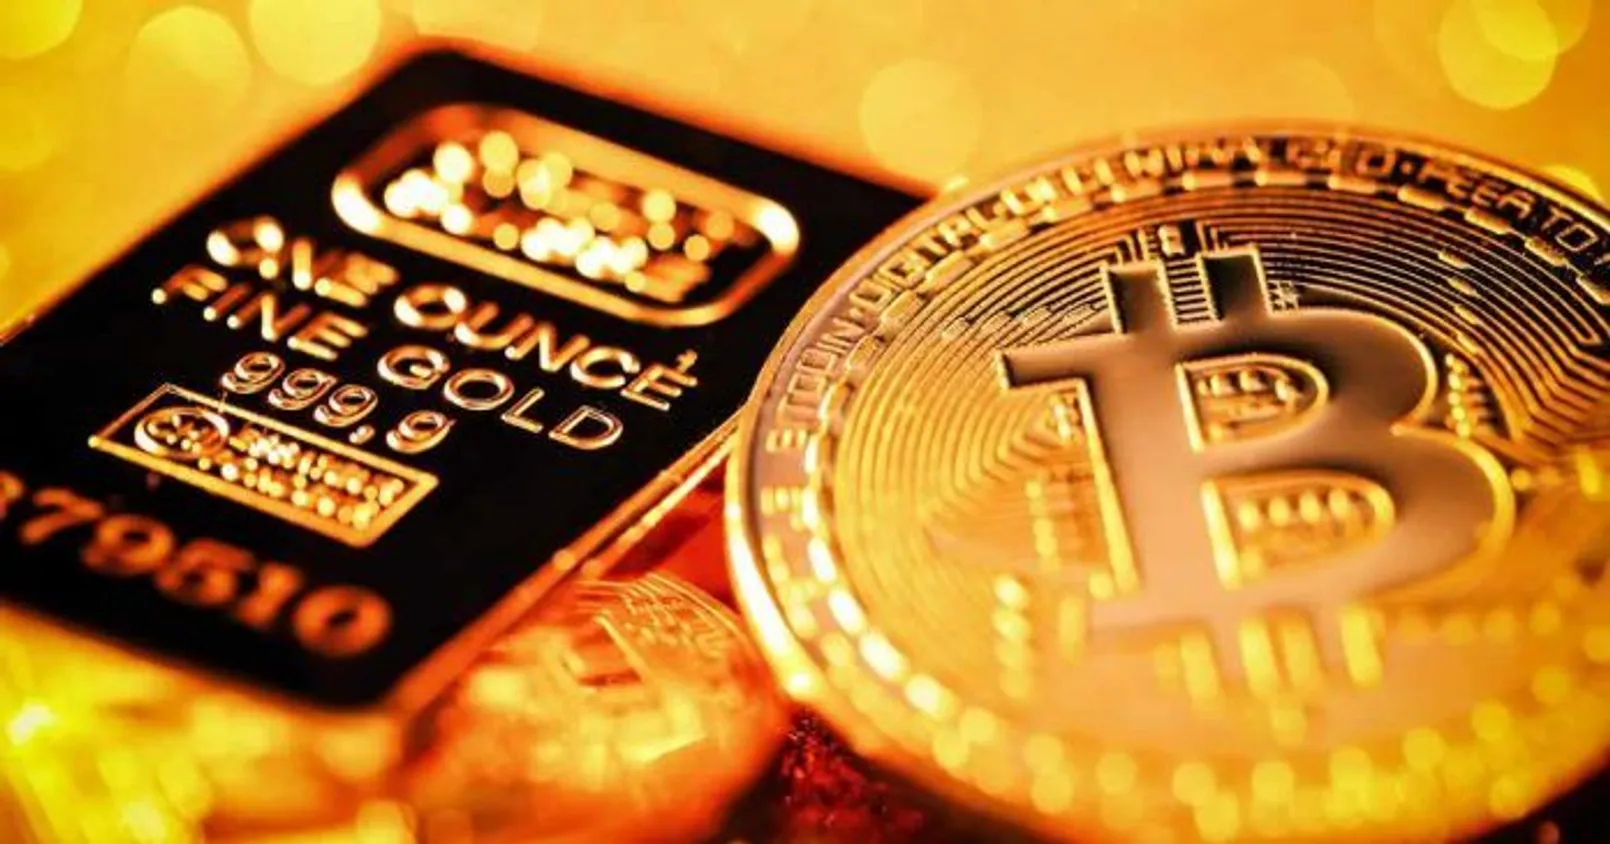 Bitcoin Vs Gold 696x365.jpeg.jpg